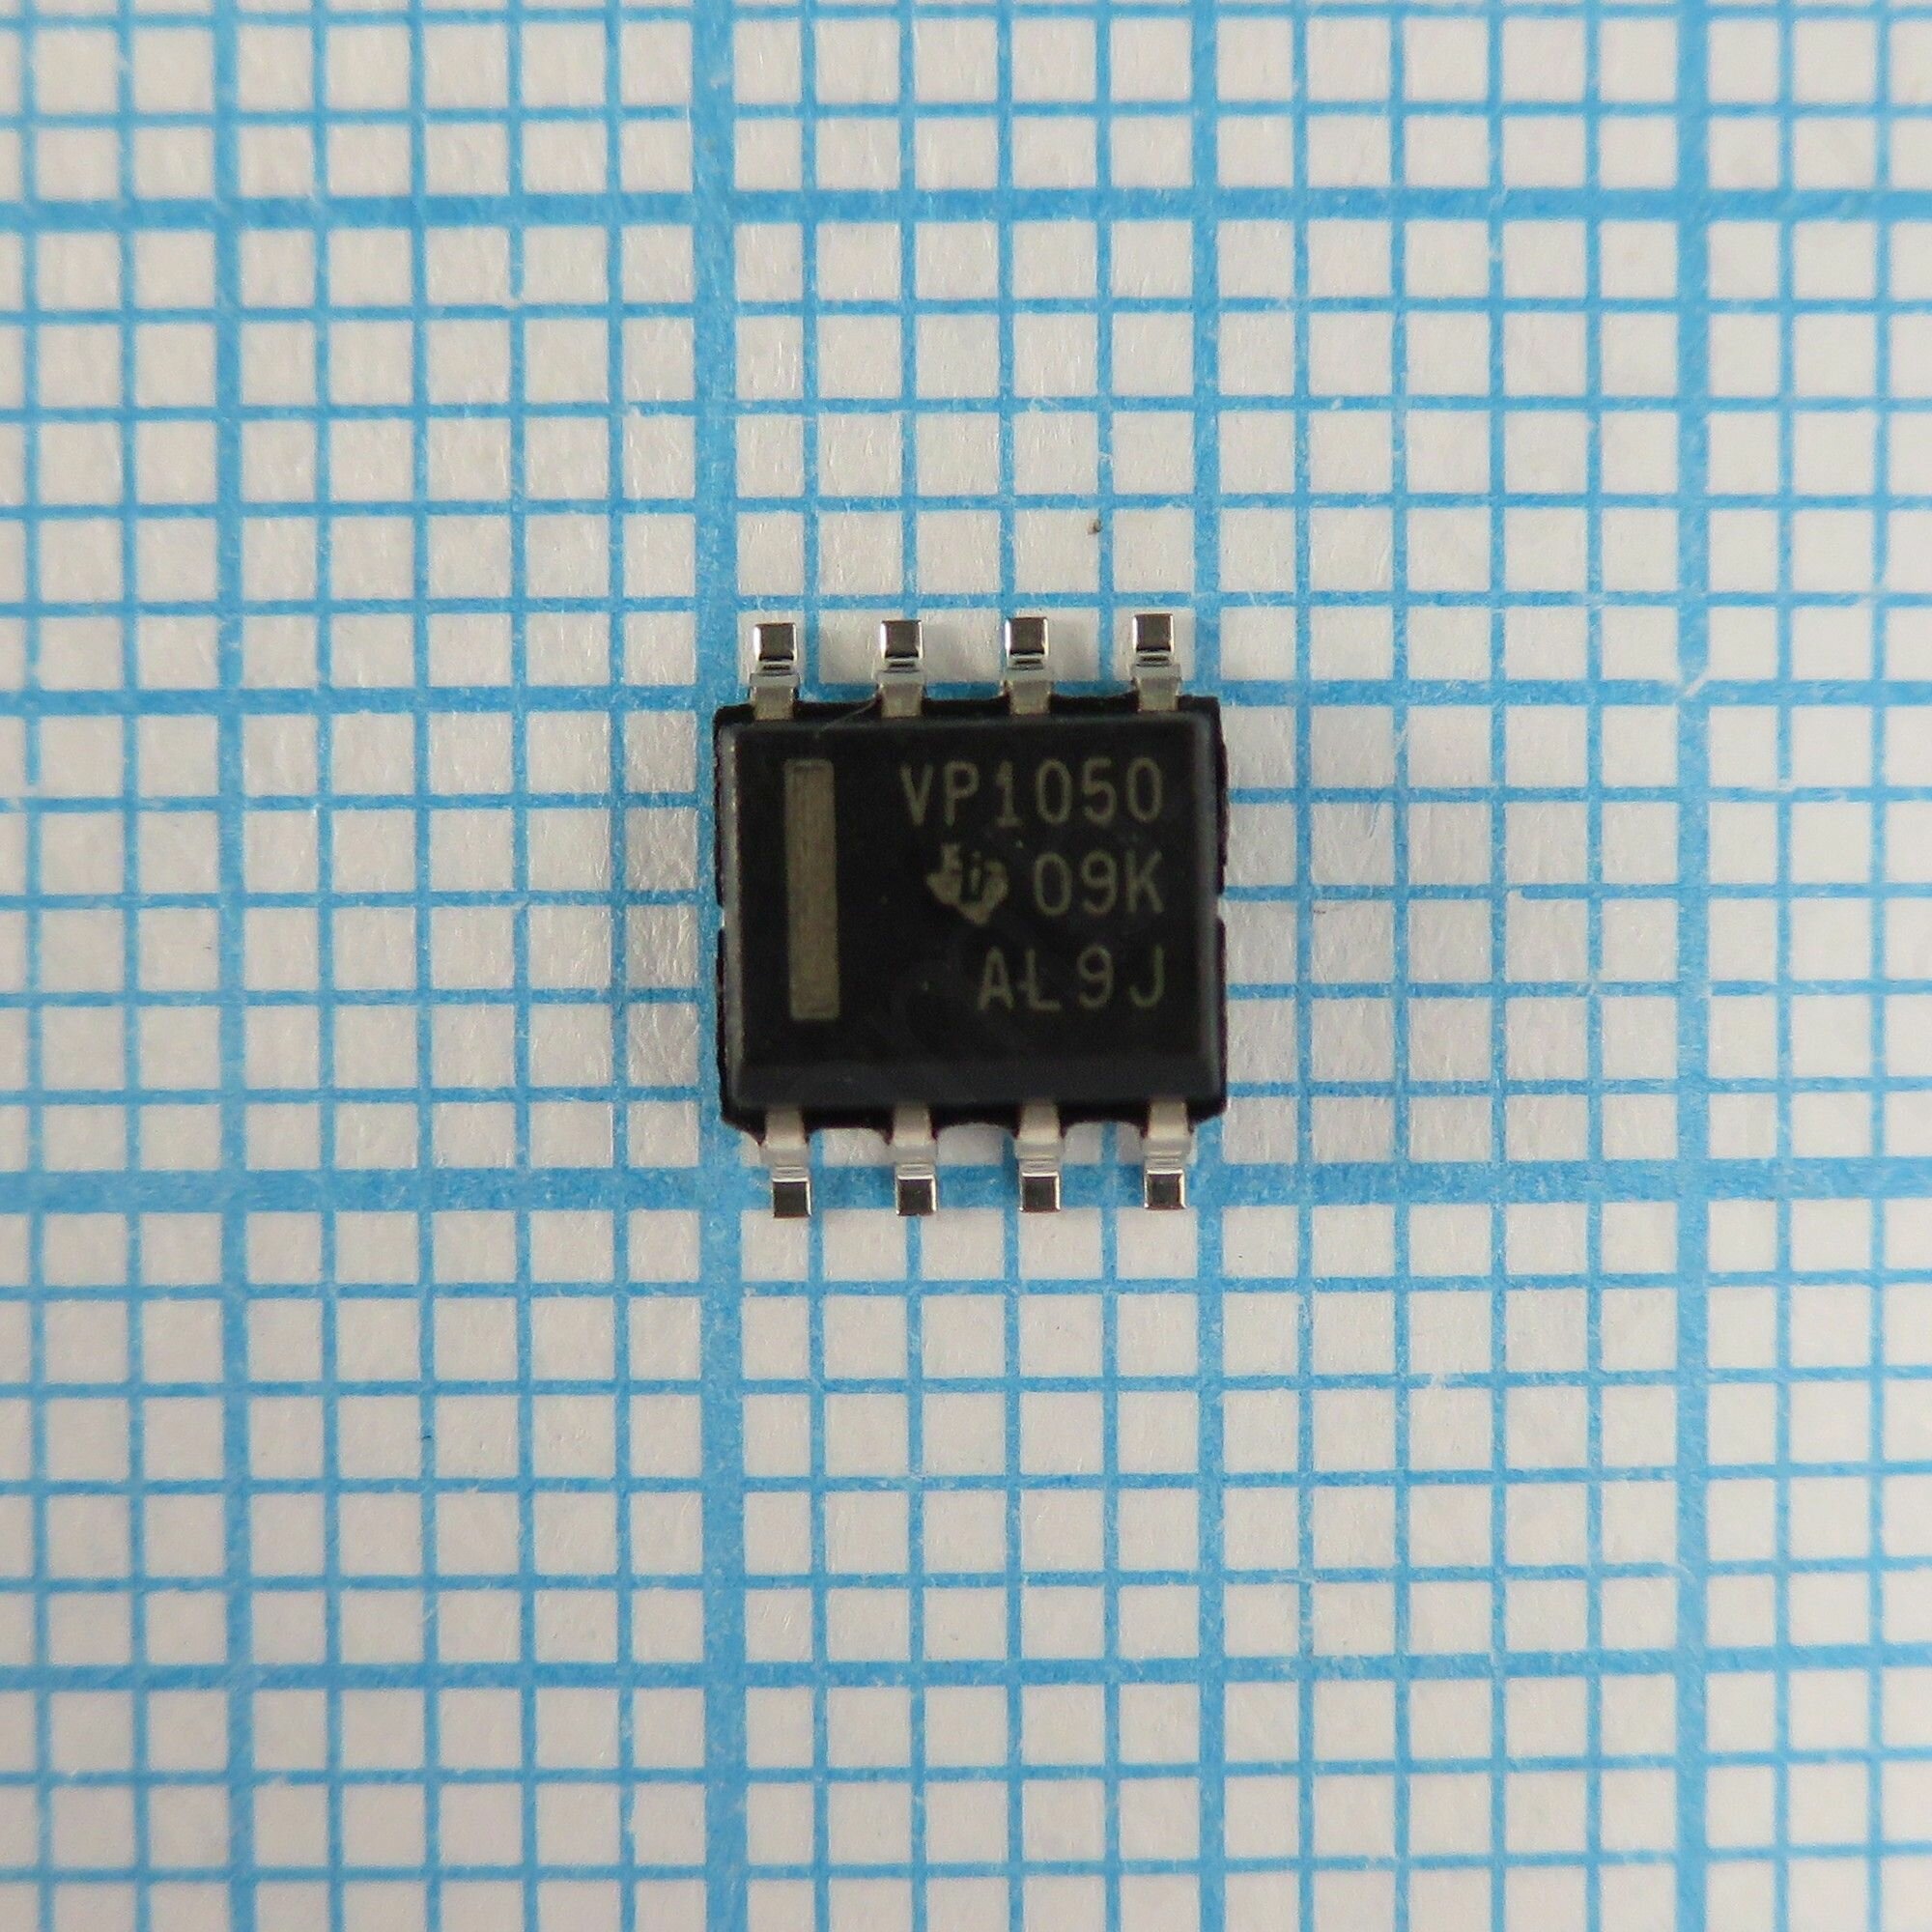 SN65HVD1050 VP1050 - Оптимизированный по электромагнитной совместимости приемопередатчик CAN-шины